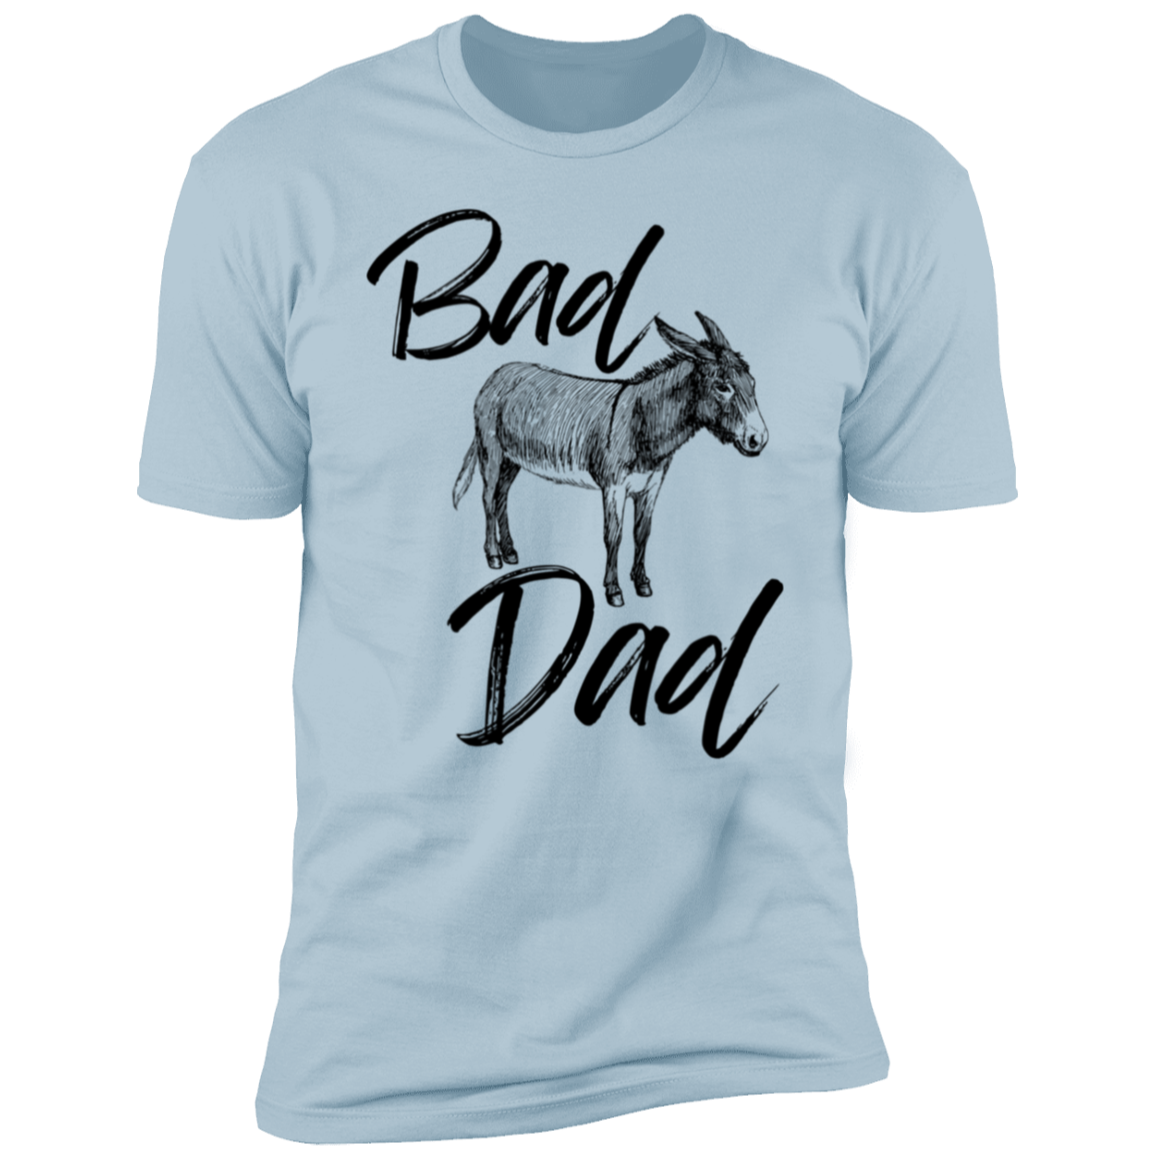 Bad Ass Dad T-Shirt